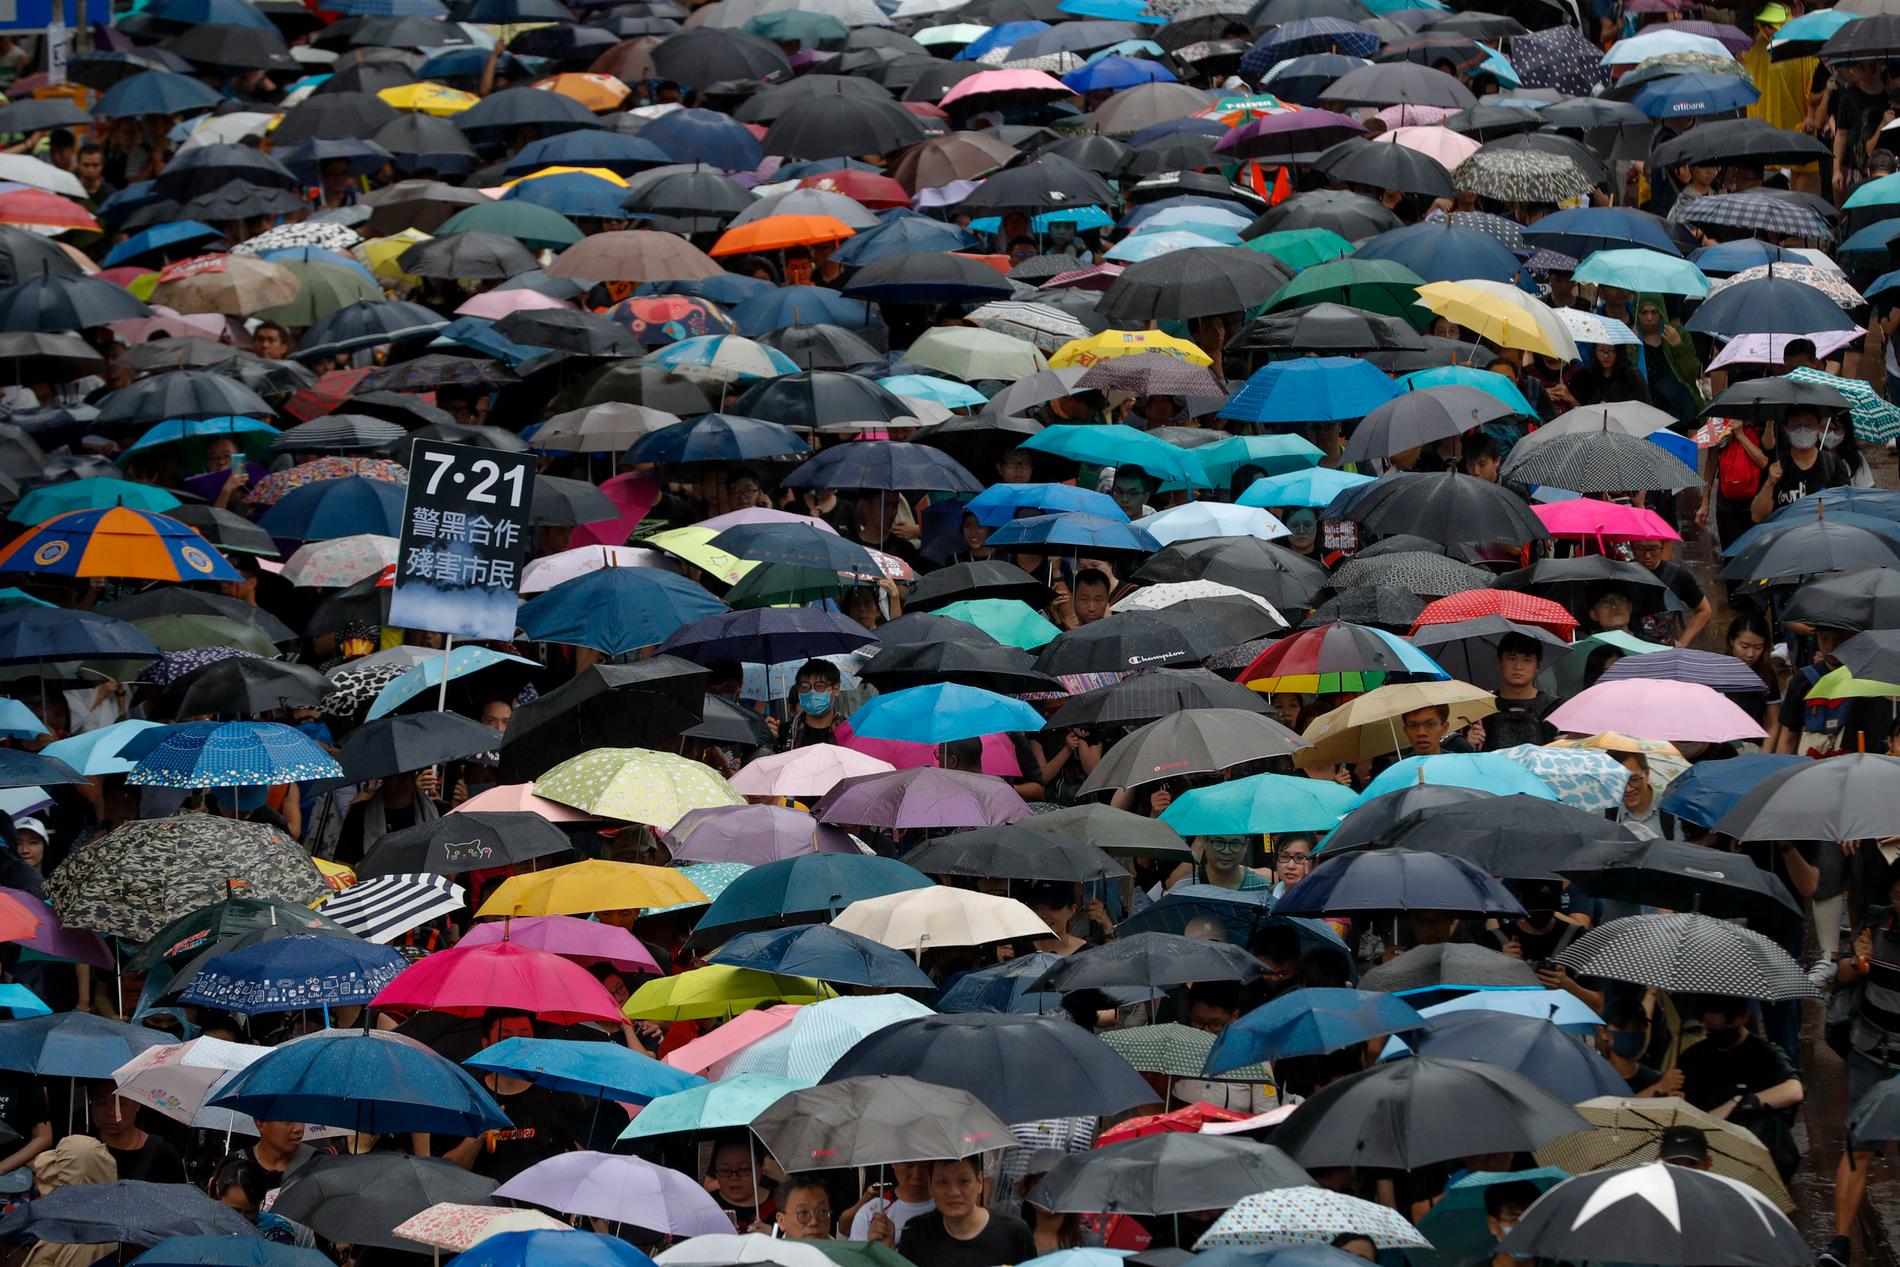 TROSSET REGNET: Hongkongkinesere trosset regnet og samlet seg søndag til en ny protest mot det de mener er stadig mindre frihet i det selvstyrte kinesiske territoriet. 